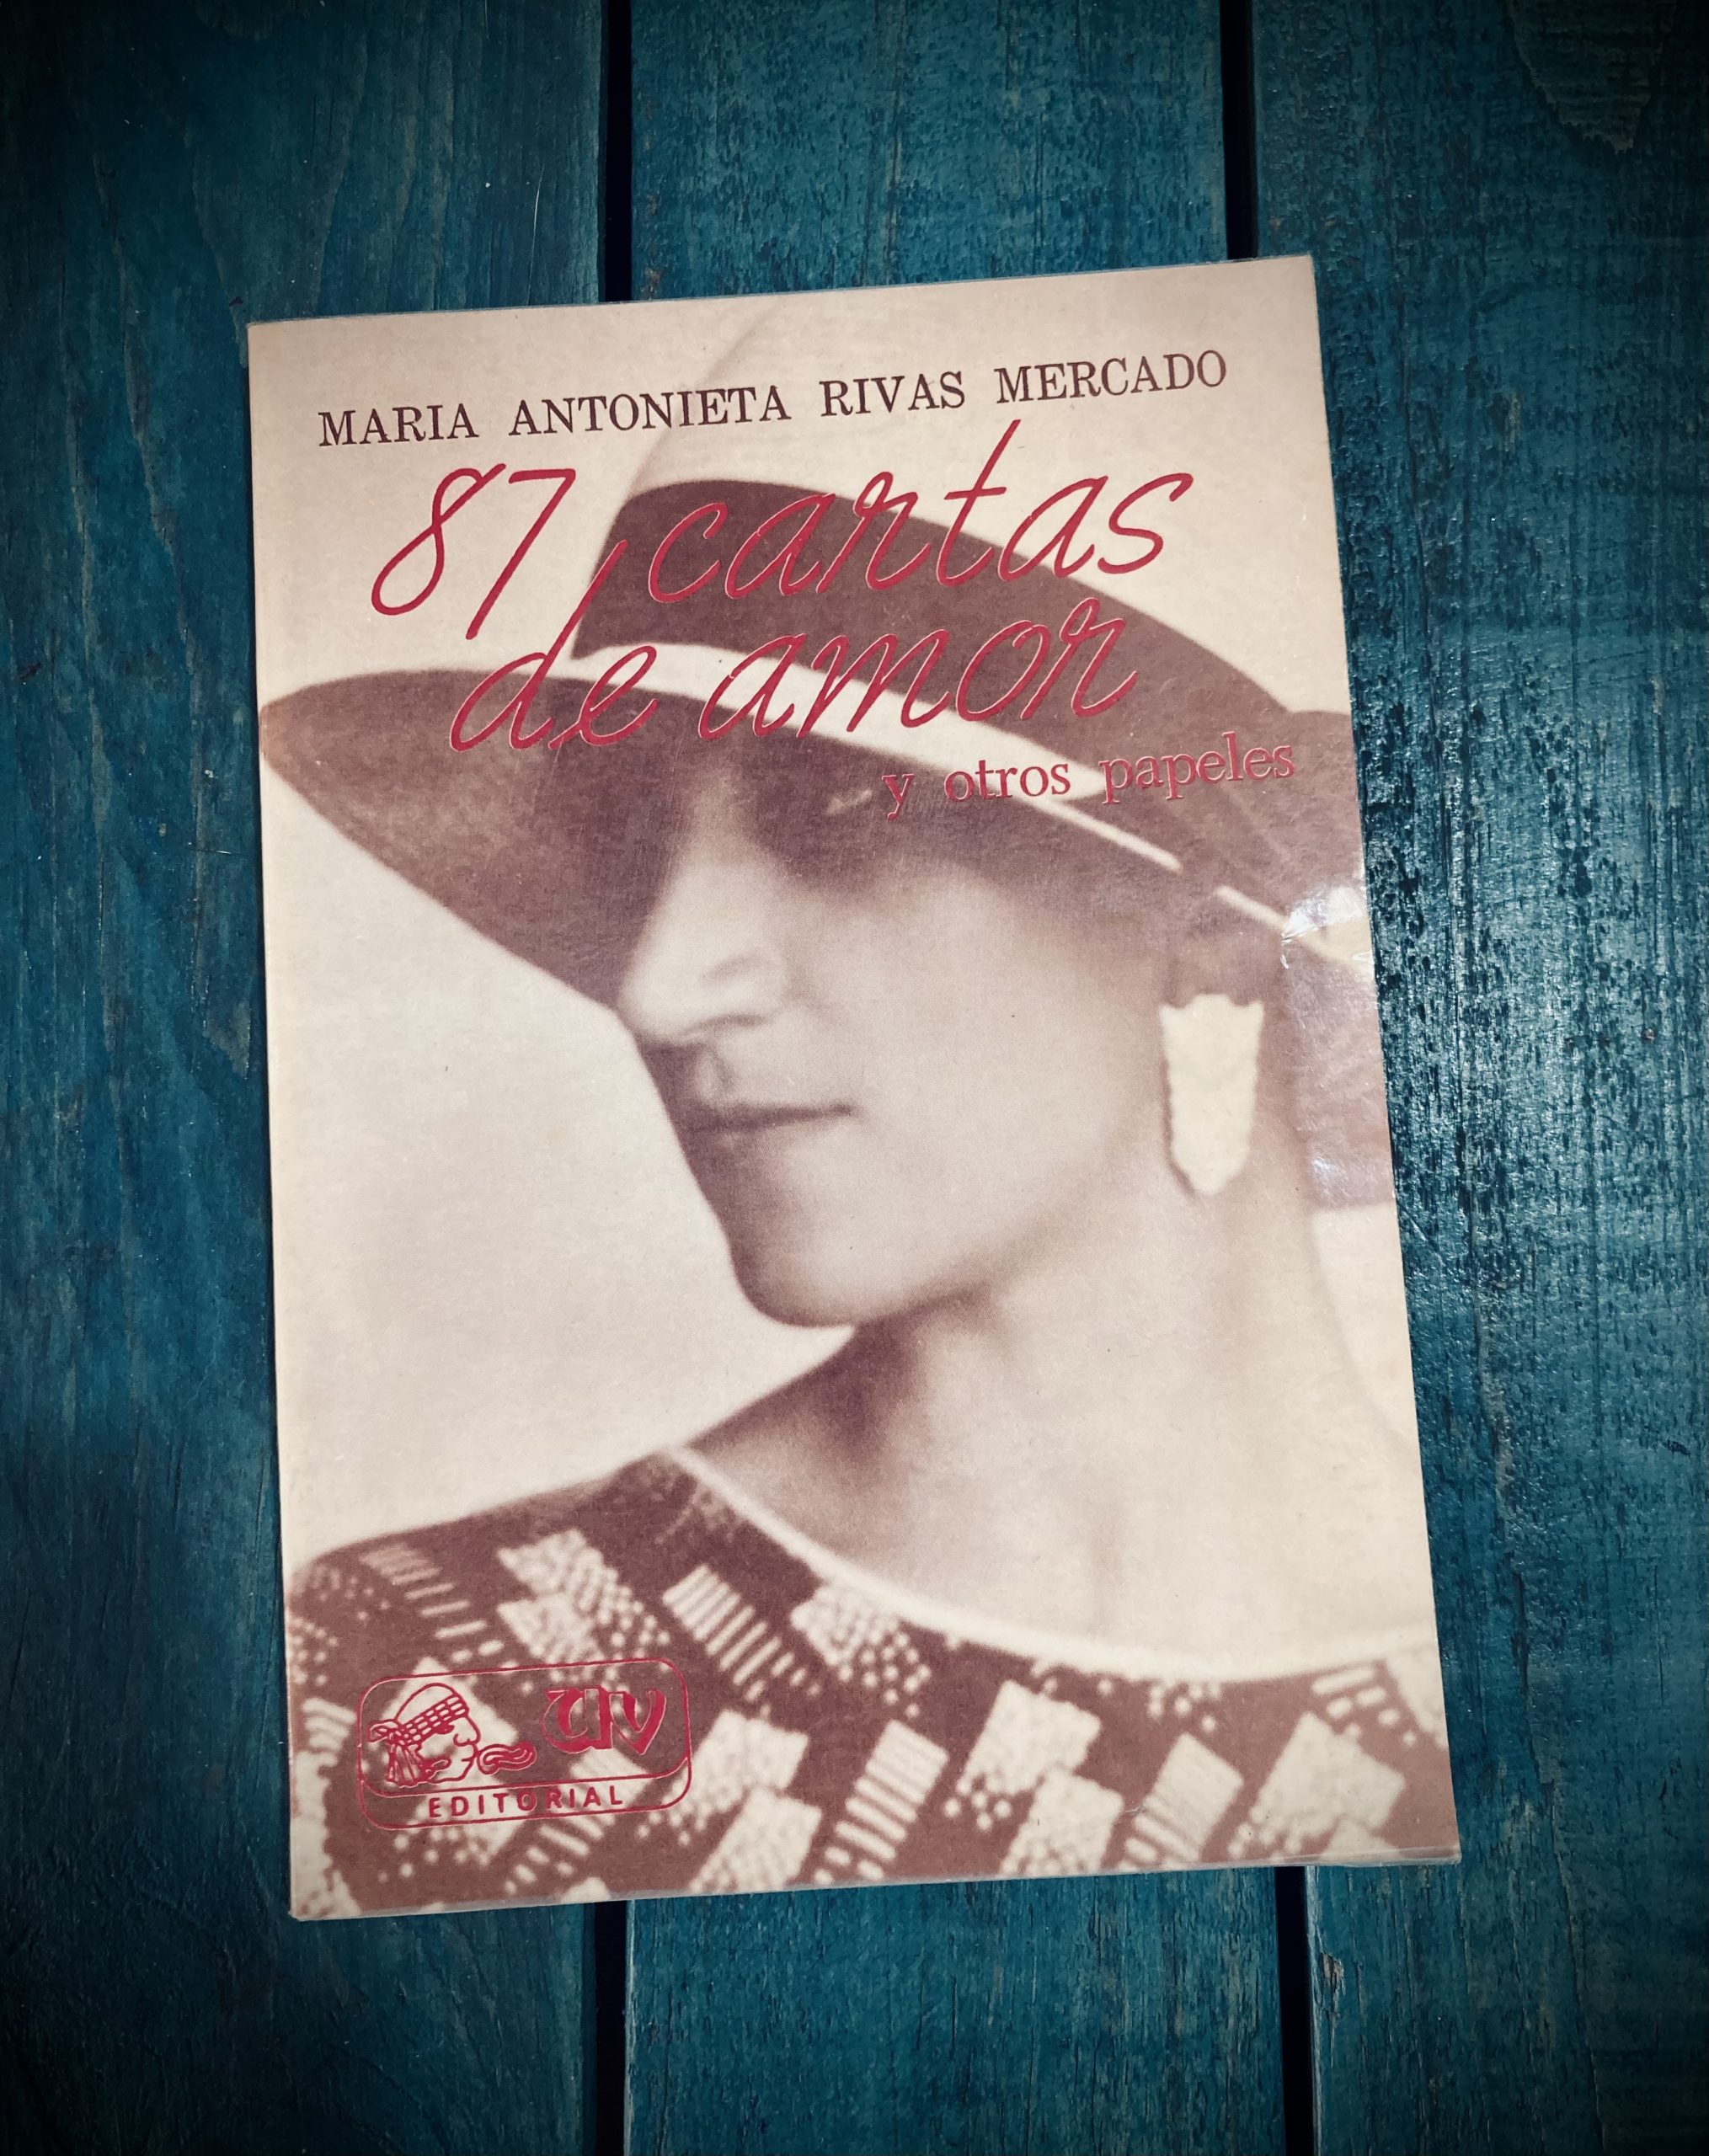 Antonieta Rivas Mercado: Obras - Antonieta Rivas Mercado: Obras